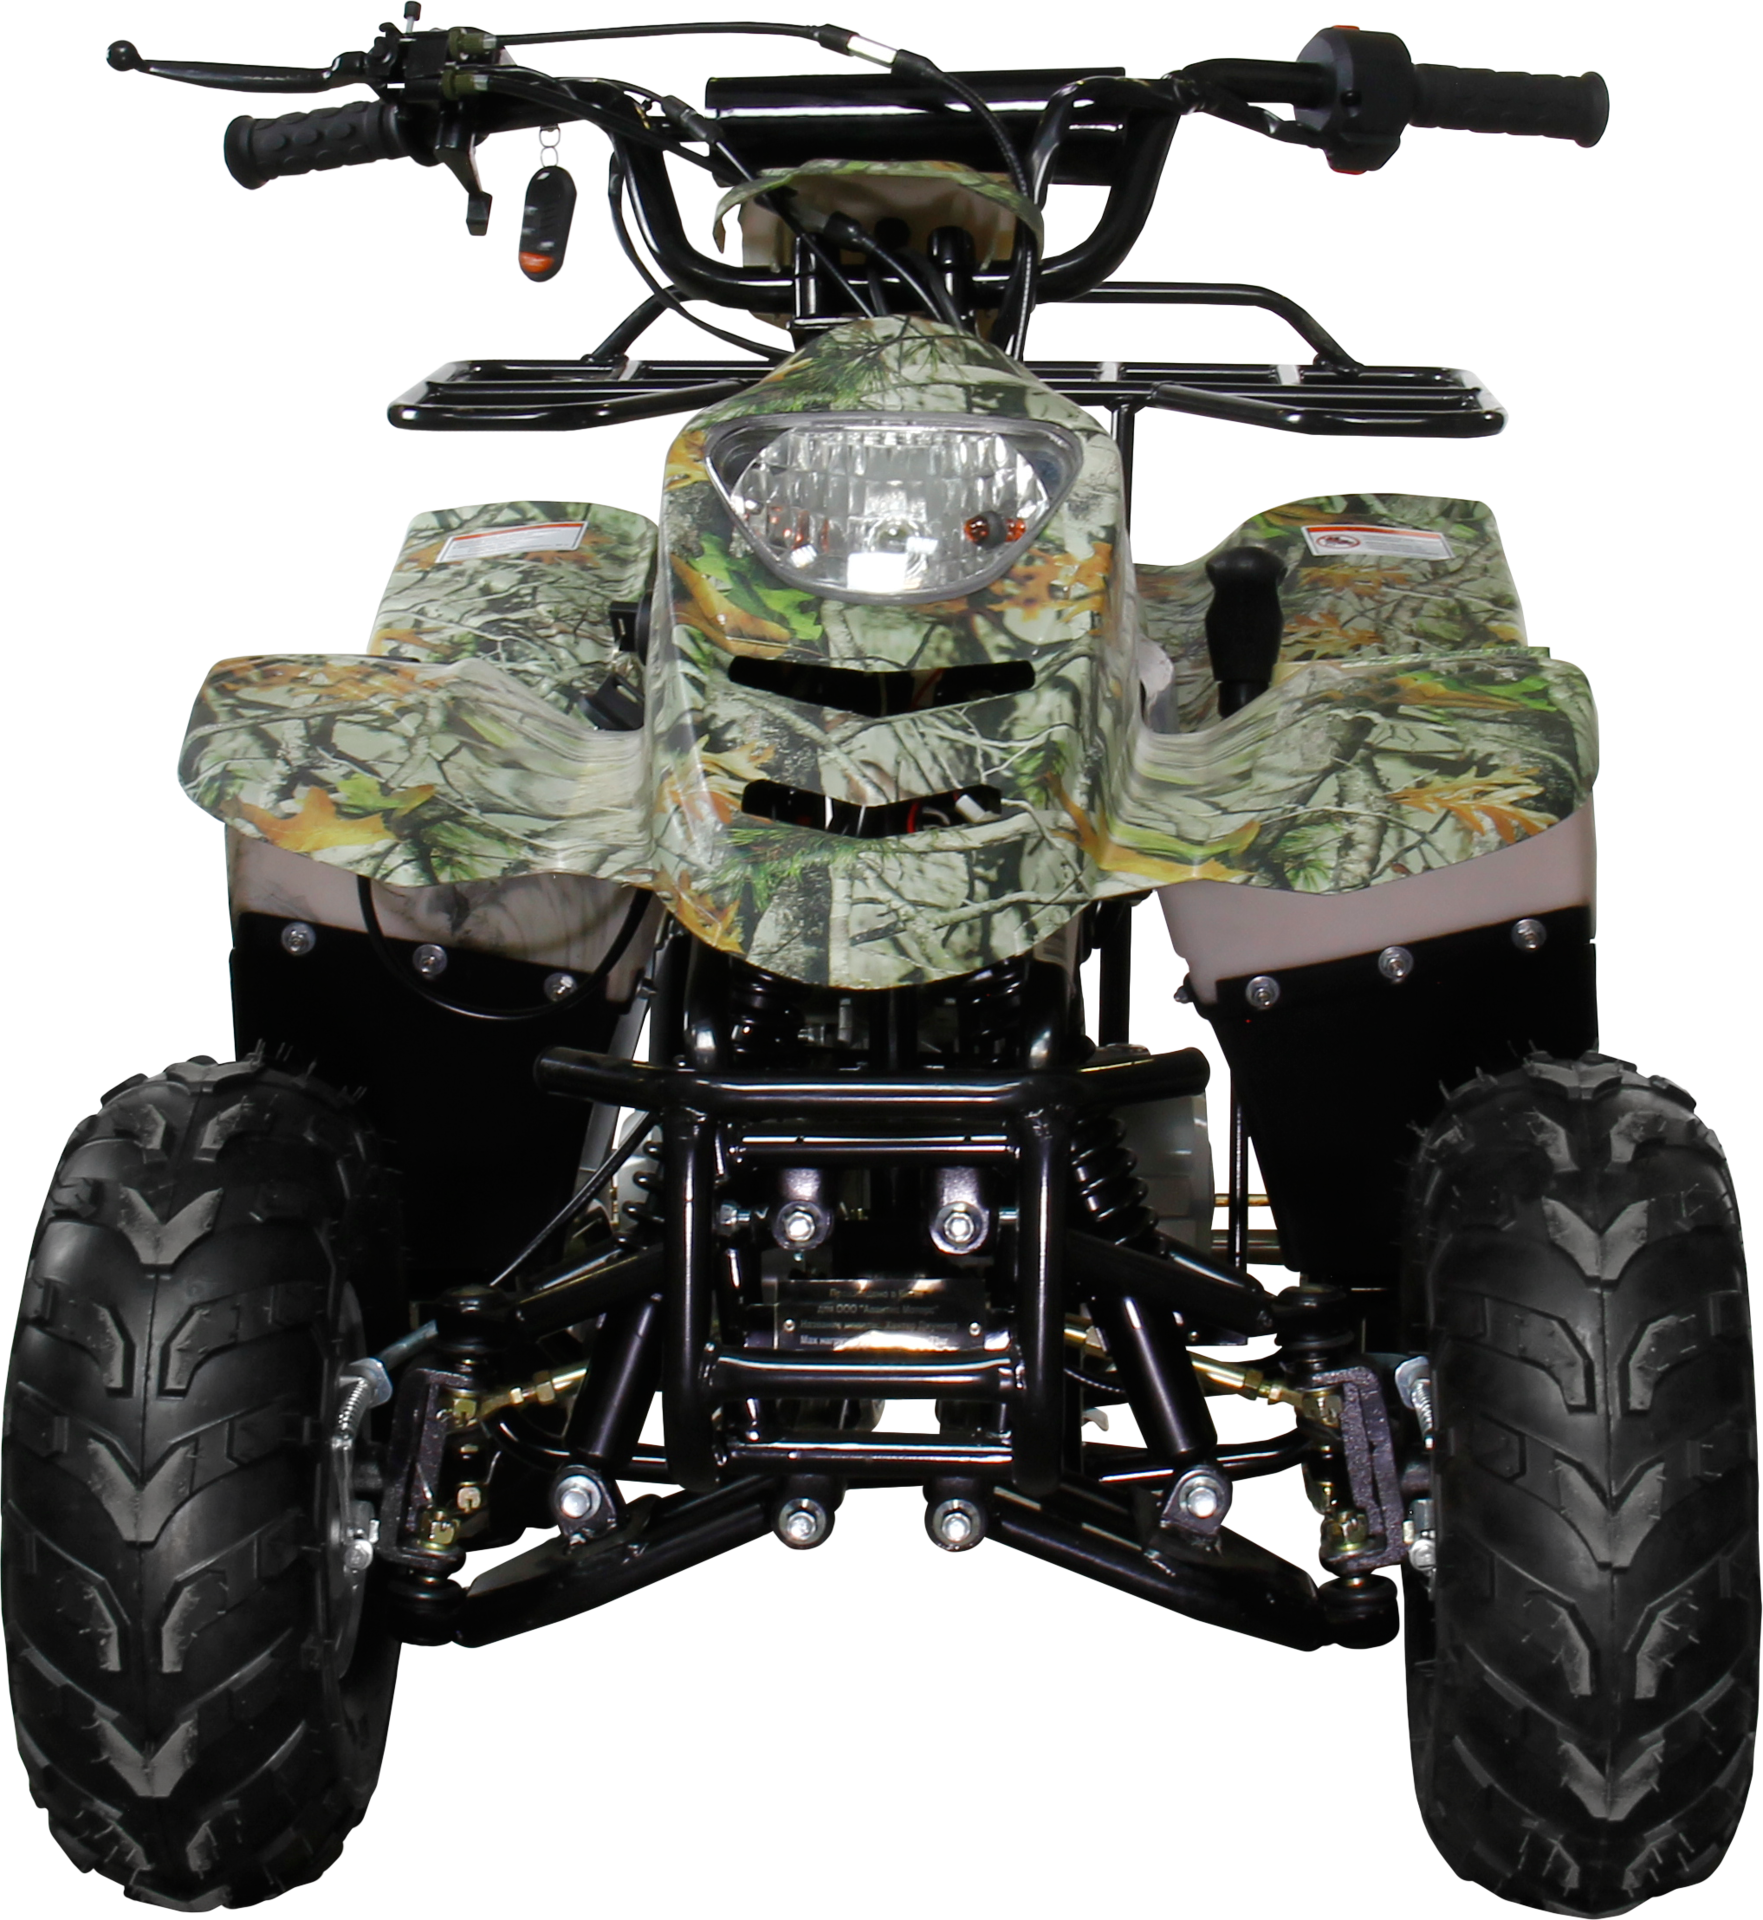 ATV, sepeda quad